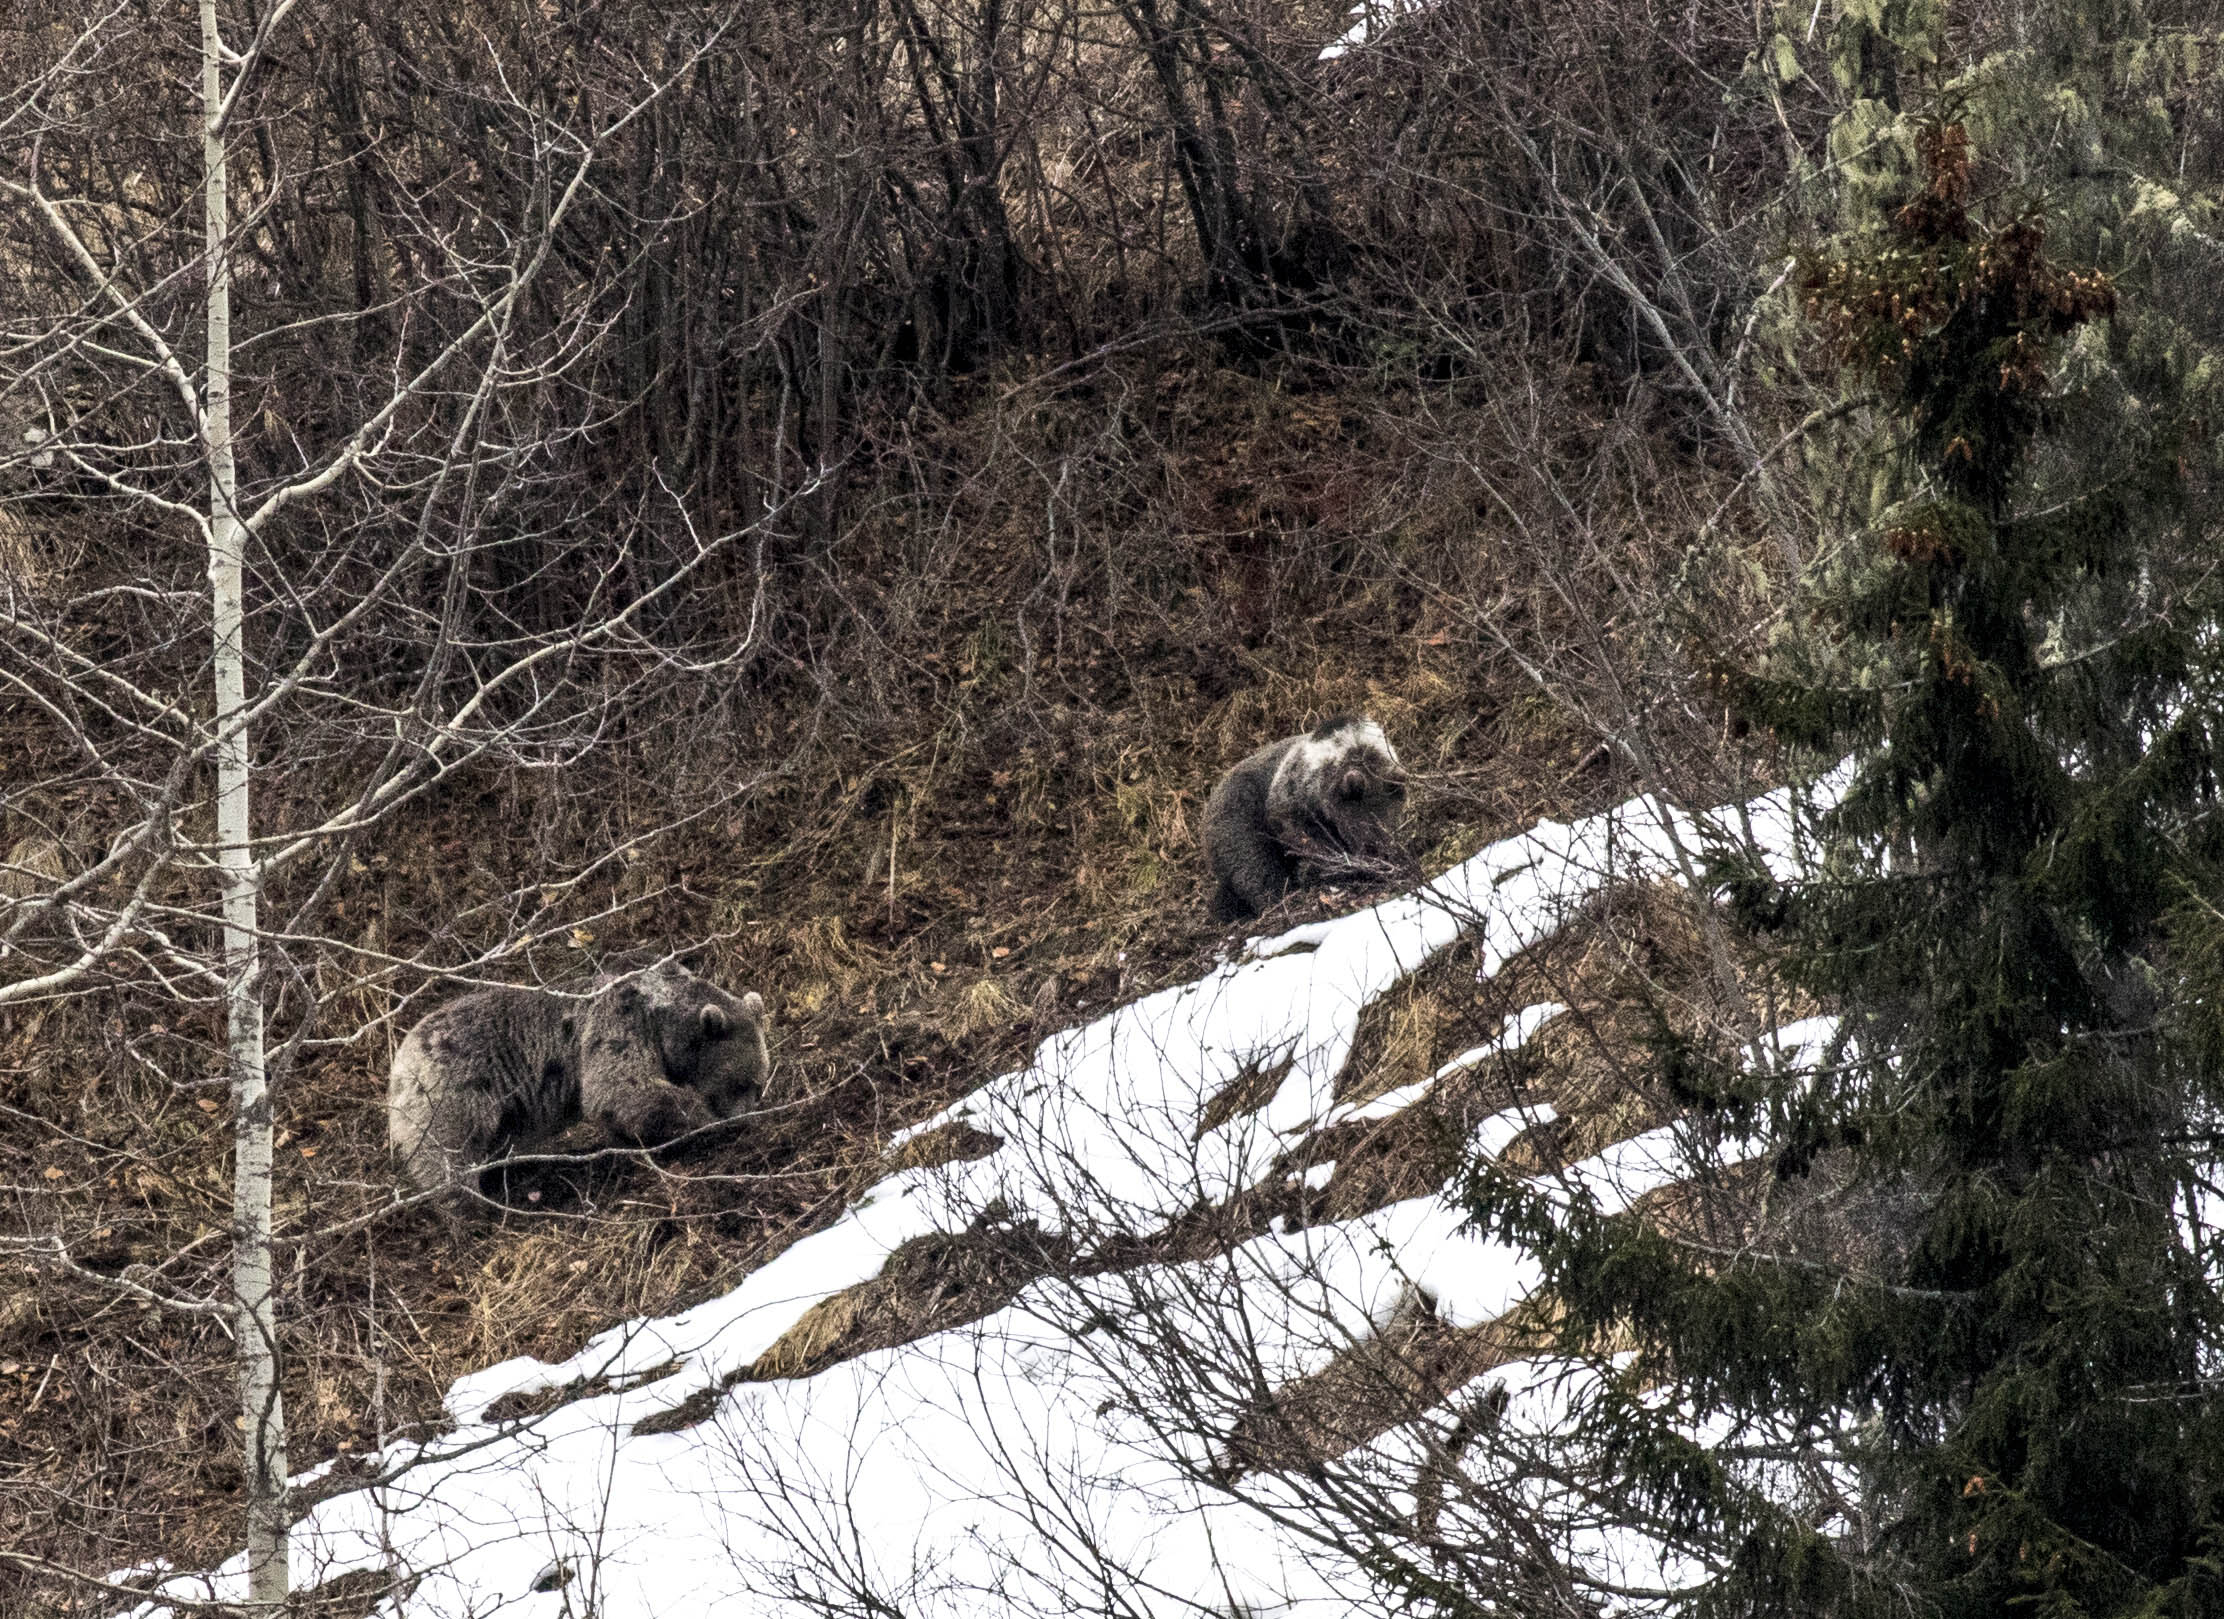 Doğu Karadeniz’de ayı popülasyonu artınca ‘Dikkat’ uyarısı geldi